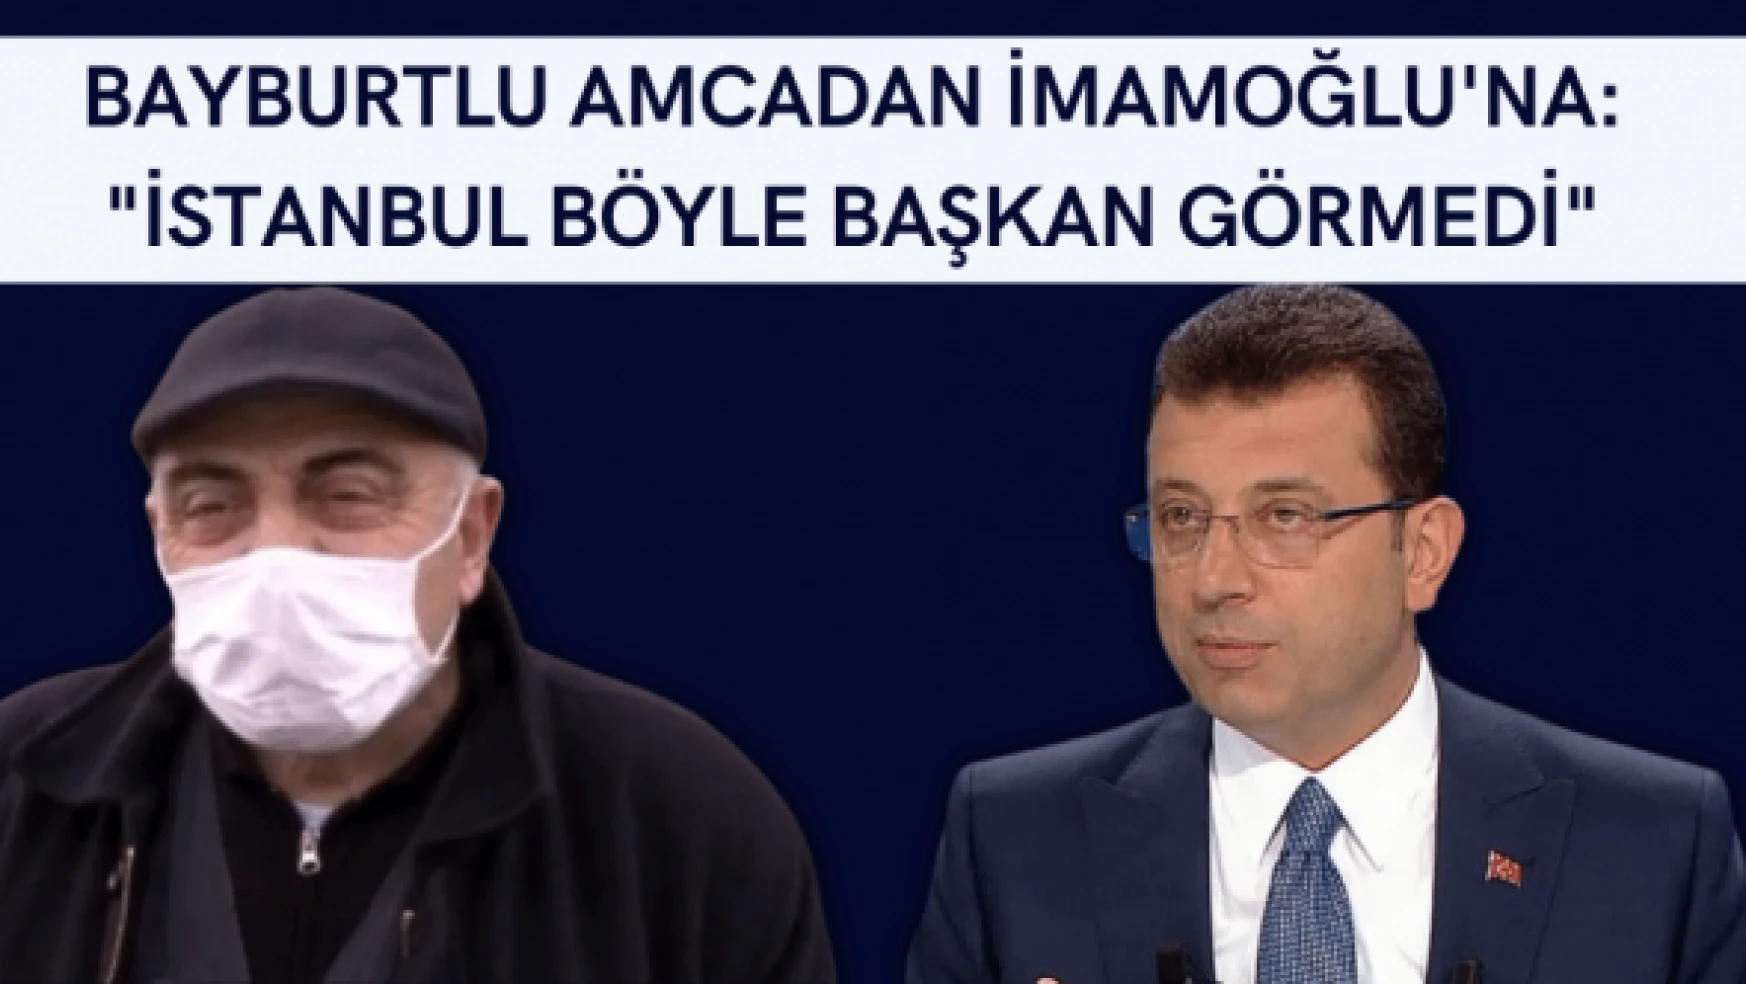 Bayburtlu amcadan İmamoğlu'na: "İstanbul böyle başkan görmedi"